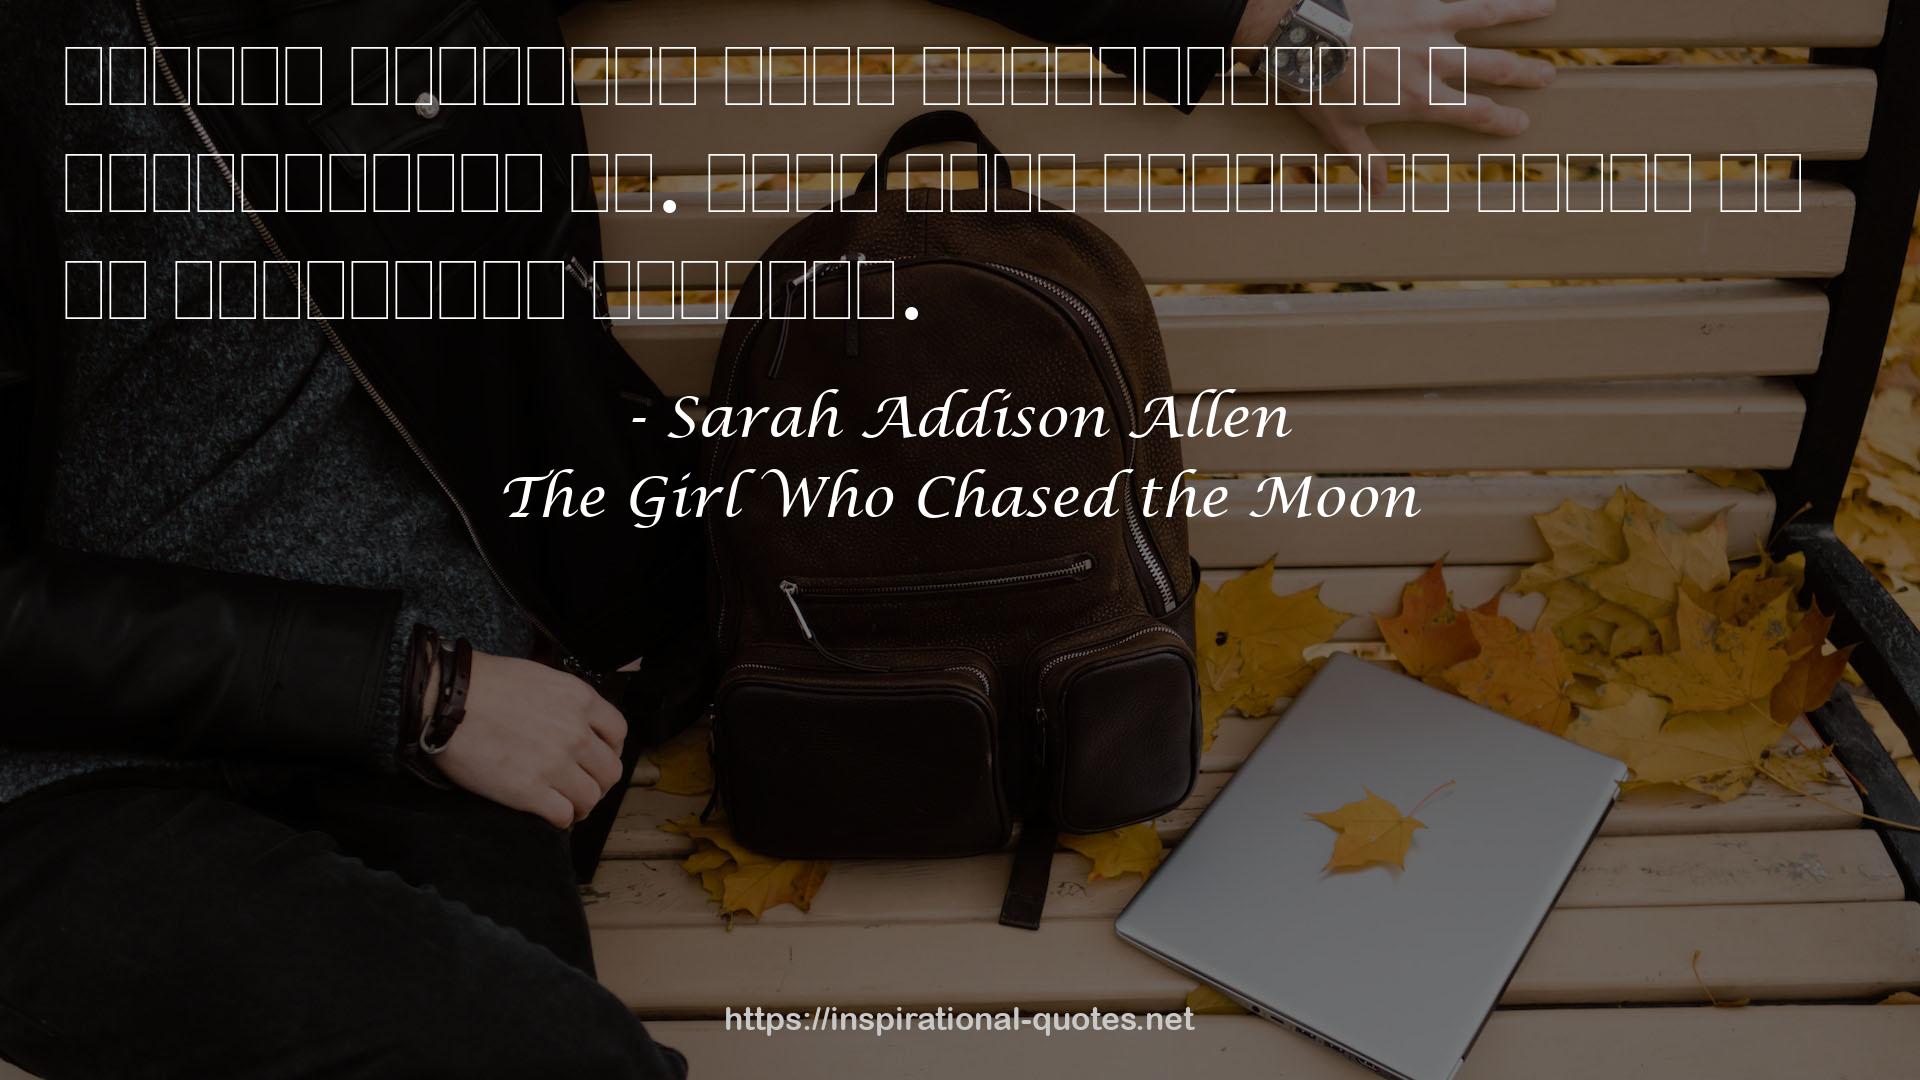 Sarah Addison Allen QUOTES